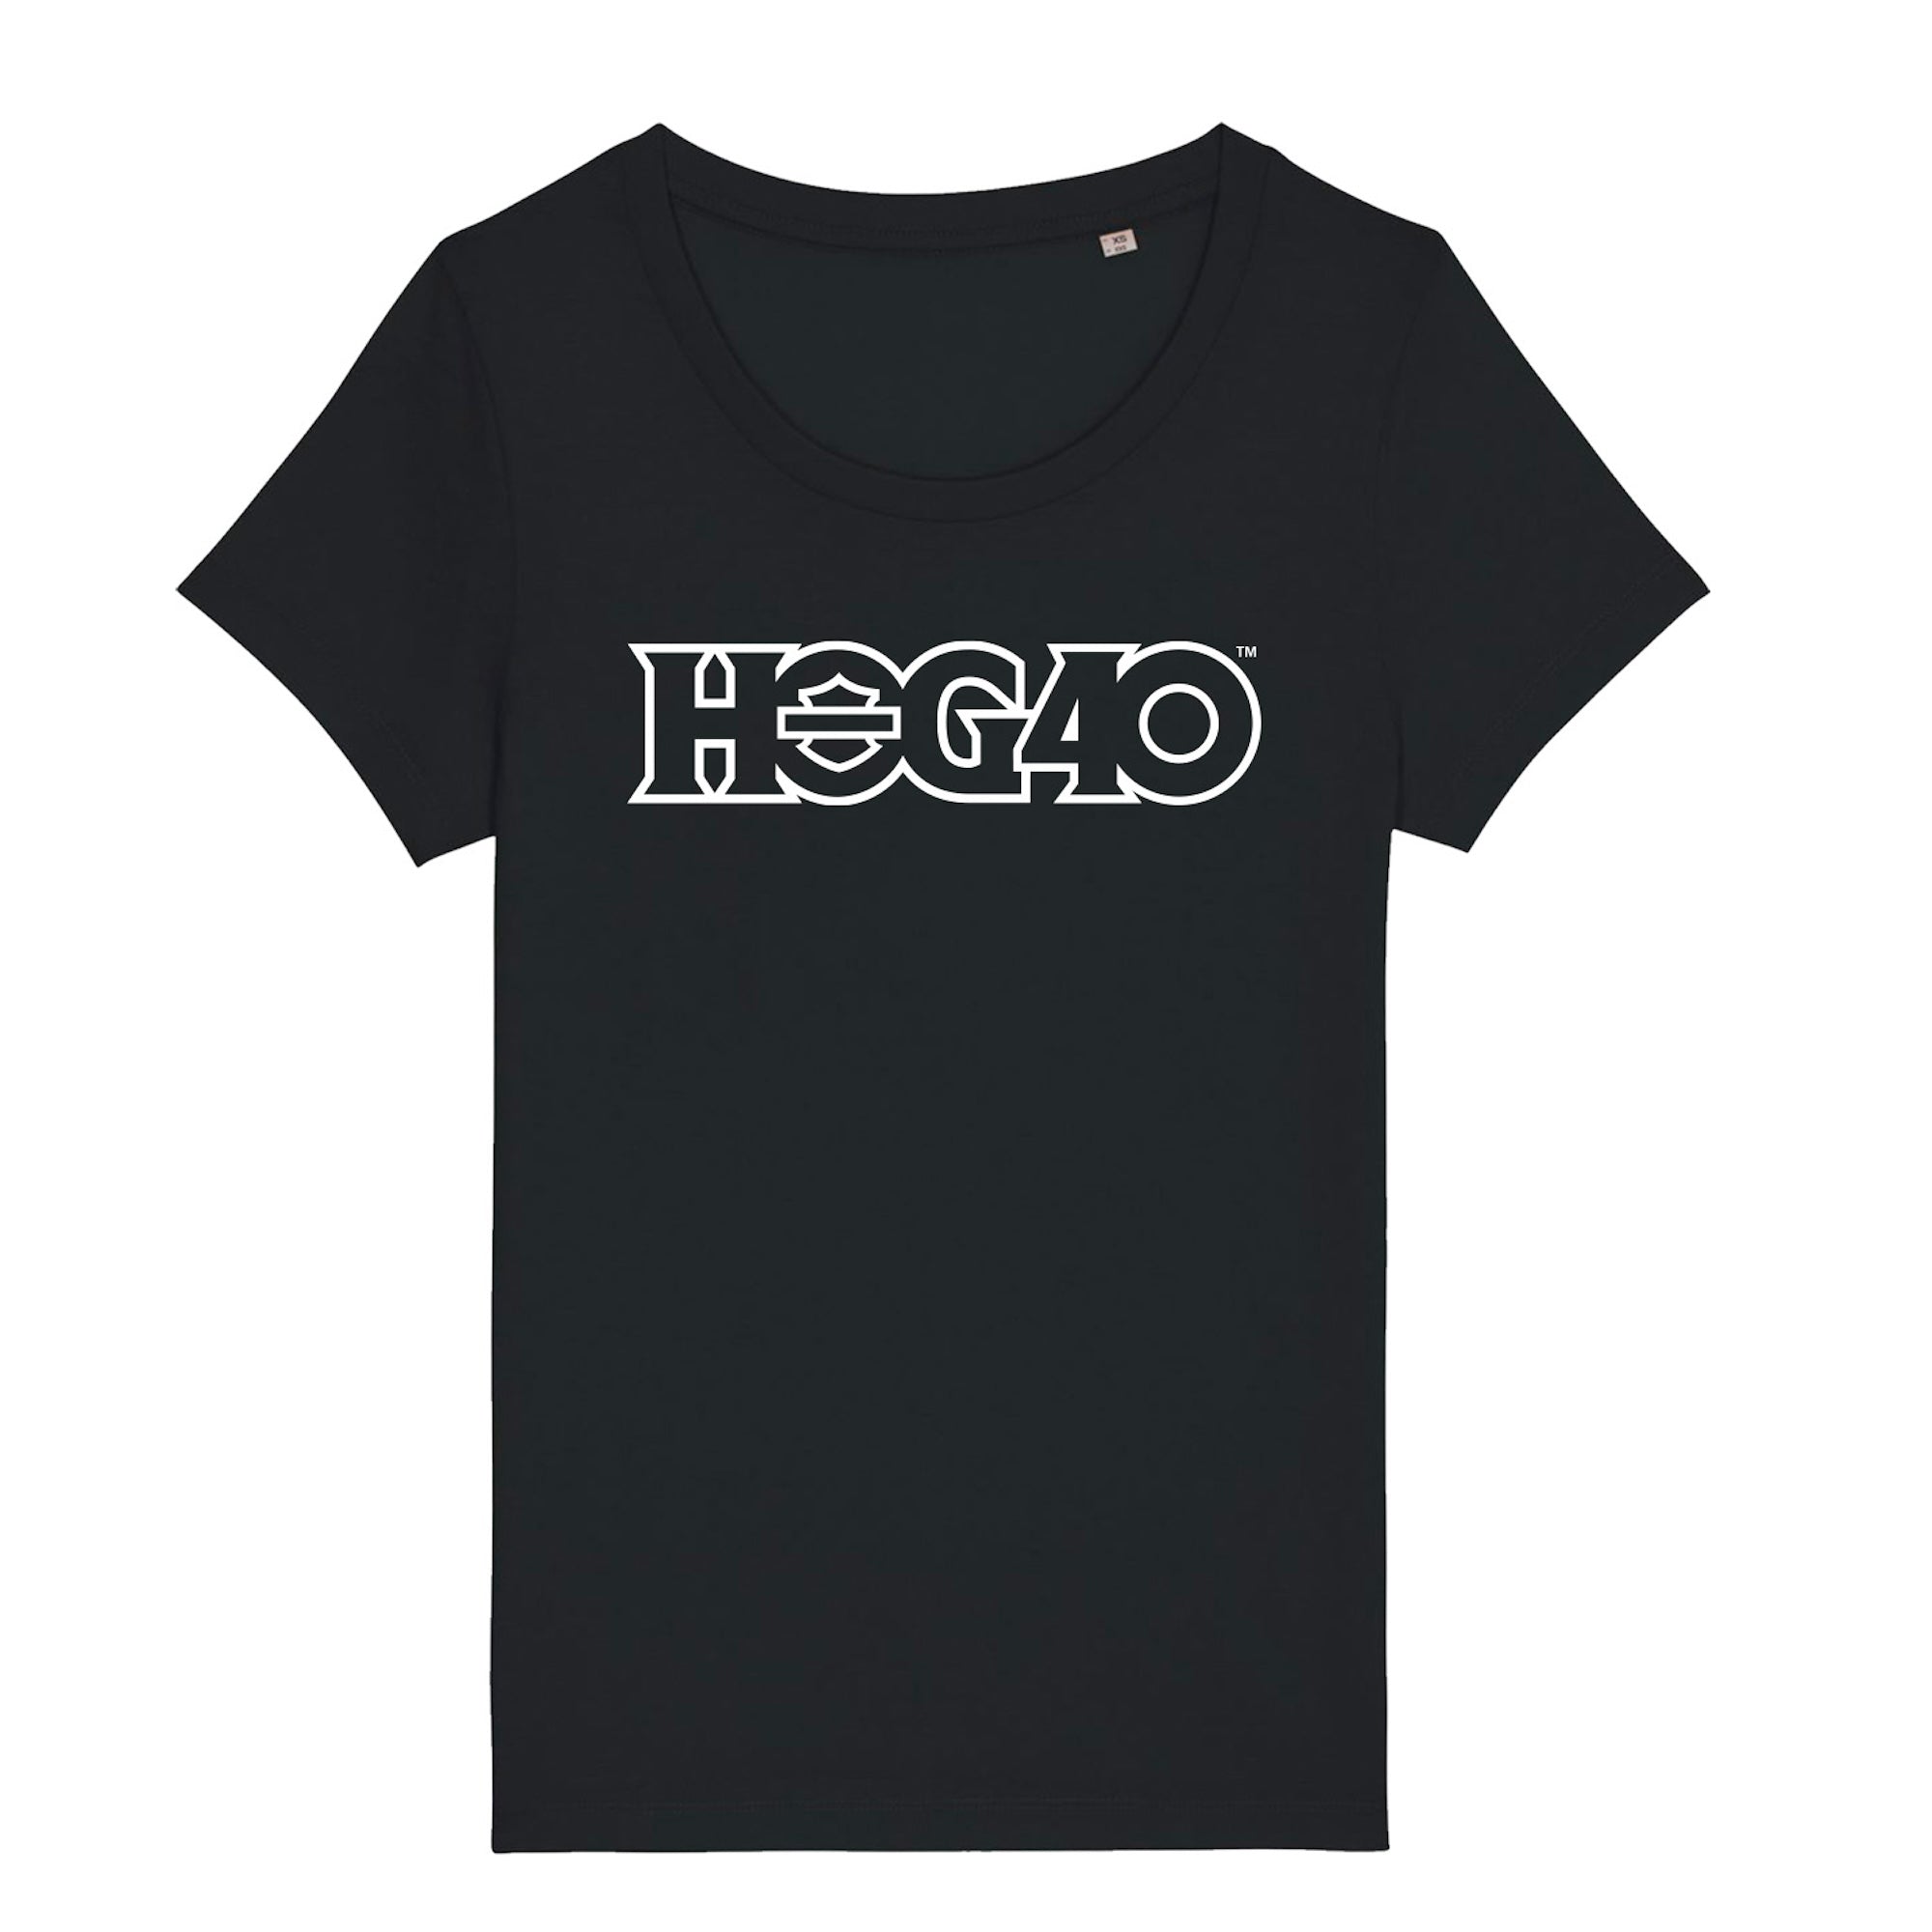 HOG40 Damen-Logo-T-Shirt